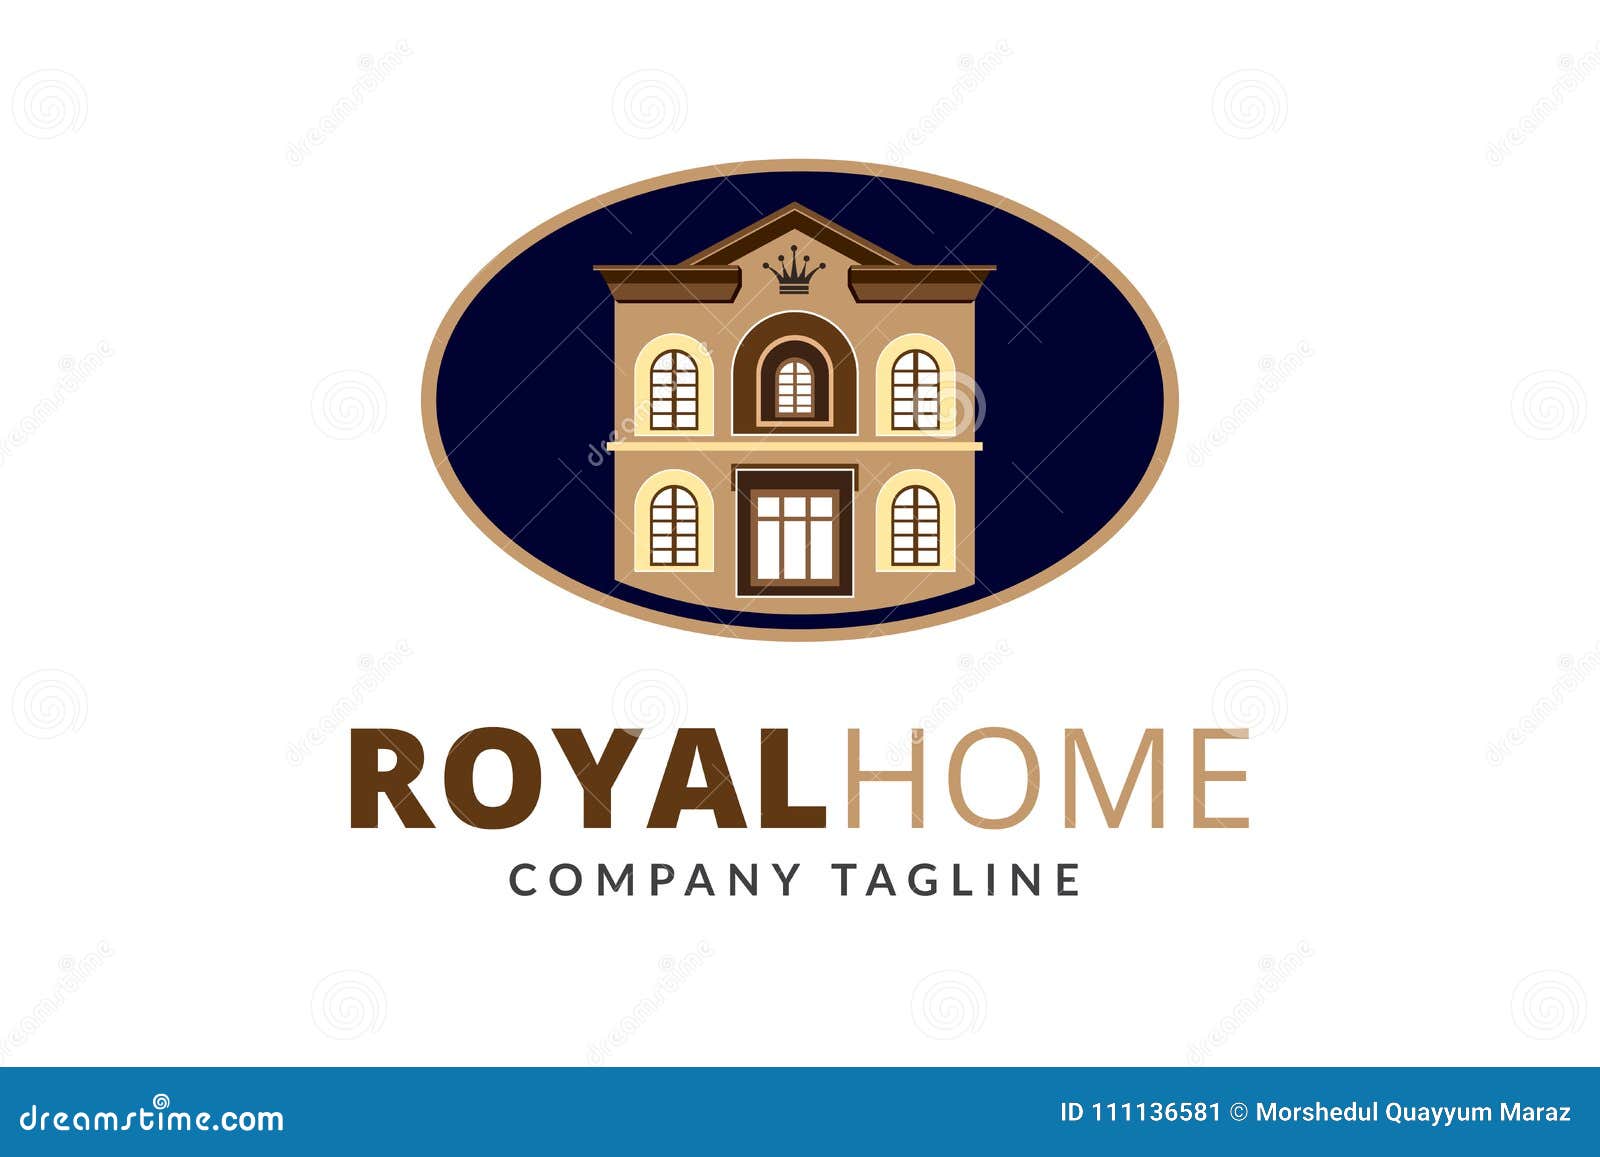 Royal Home  Logo Design  Template Vector Stock Vector 